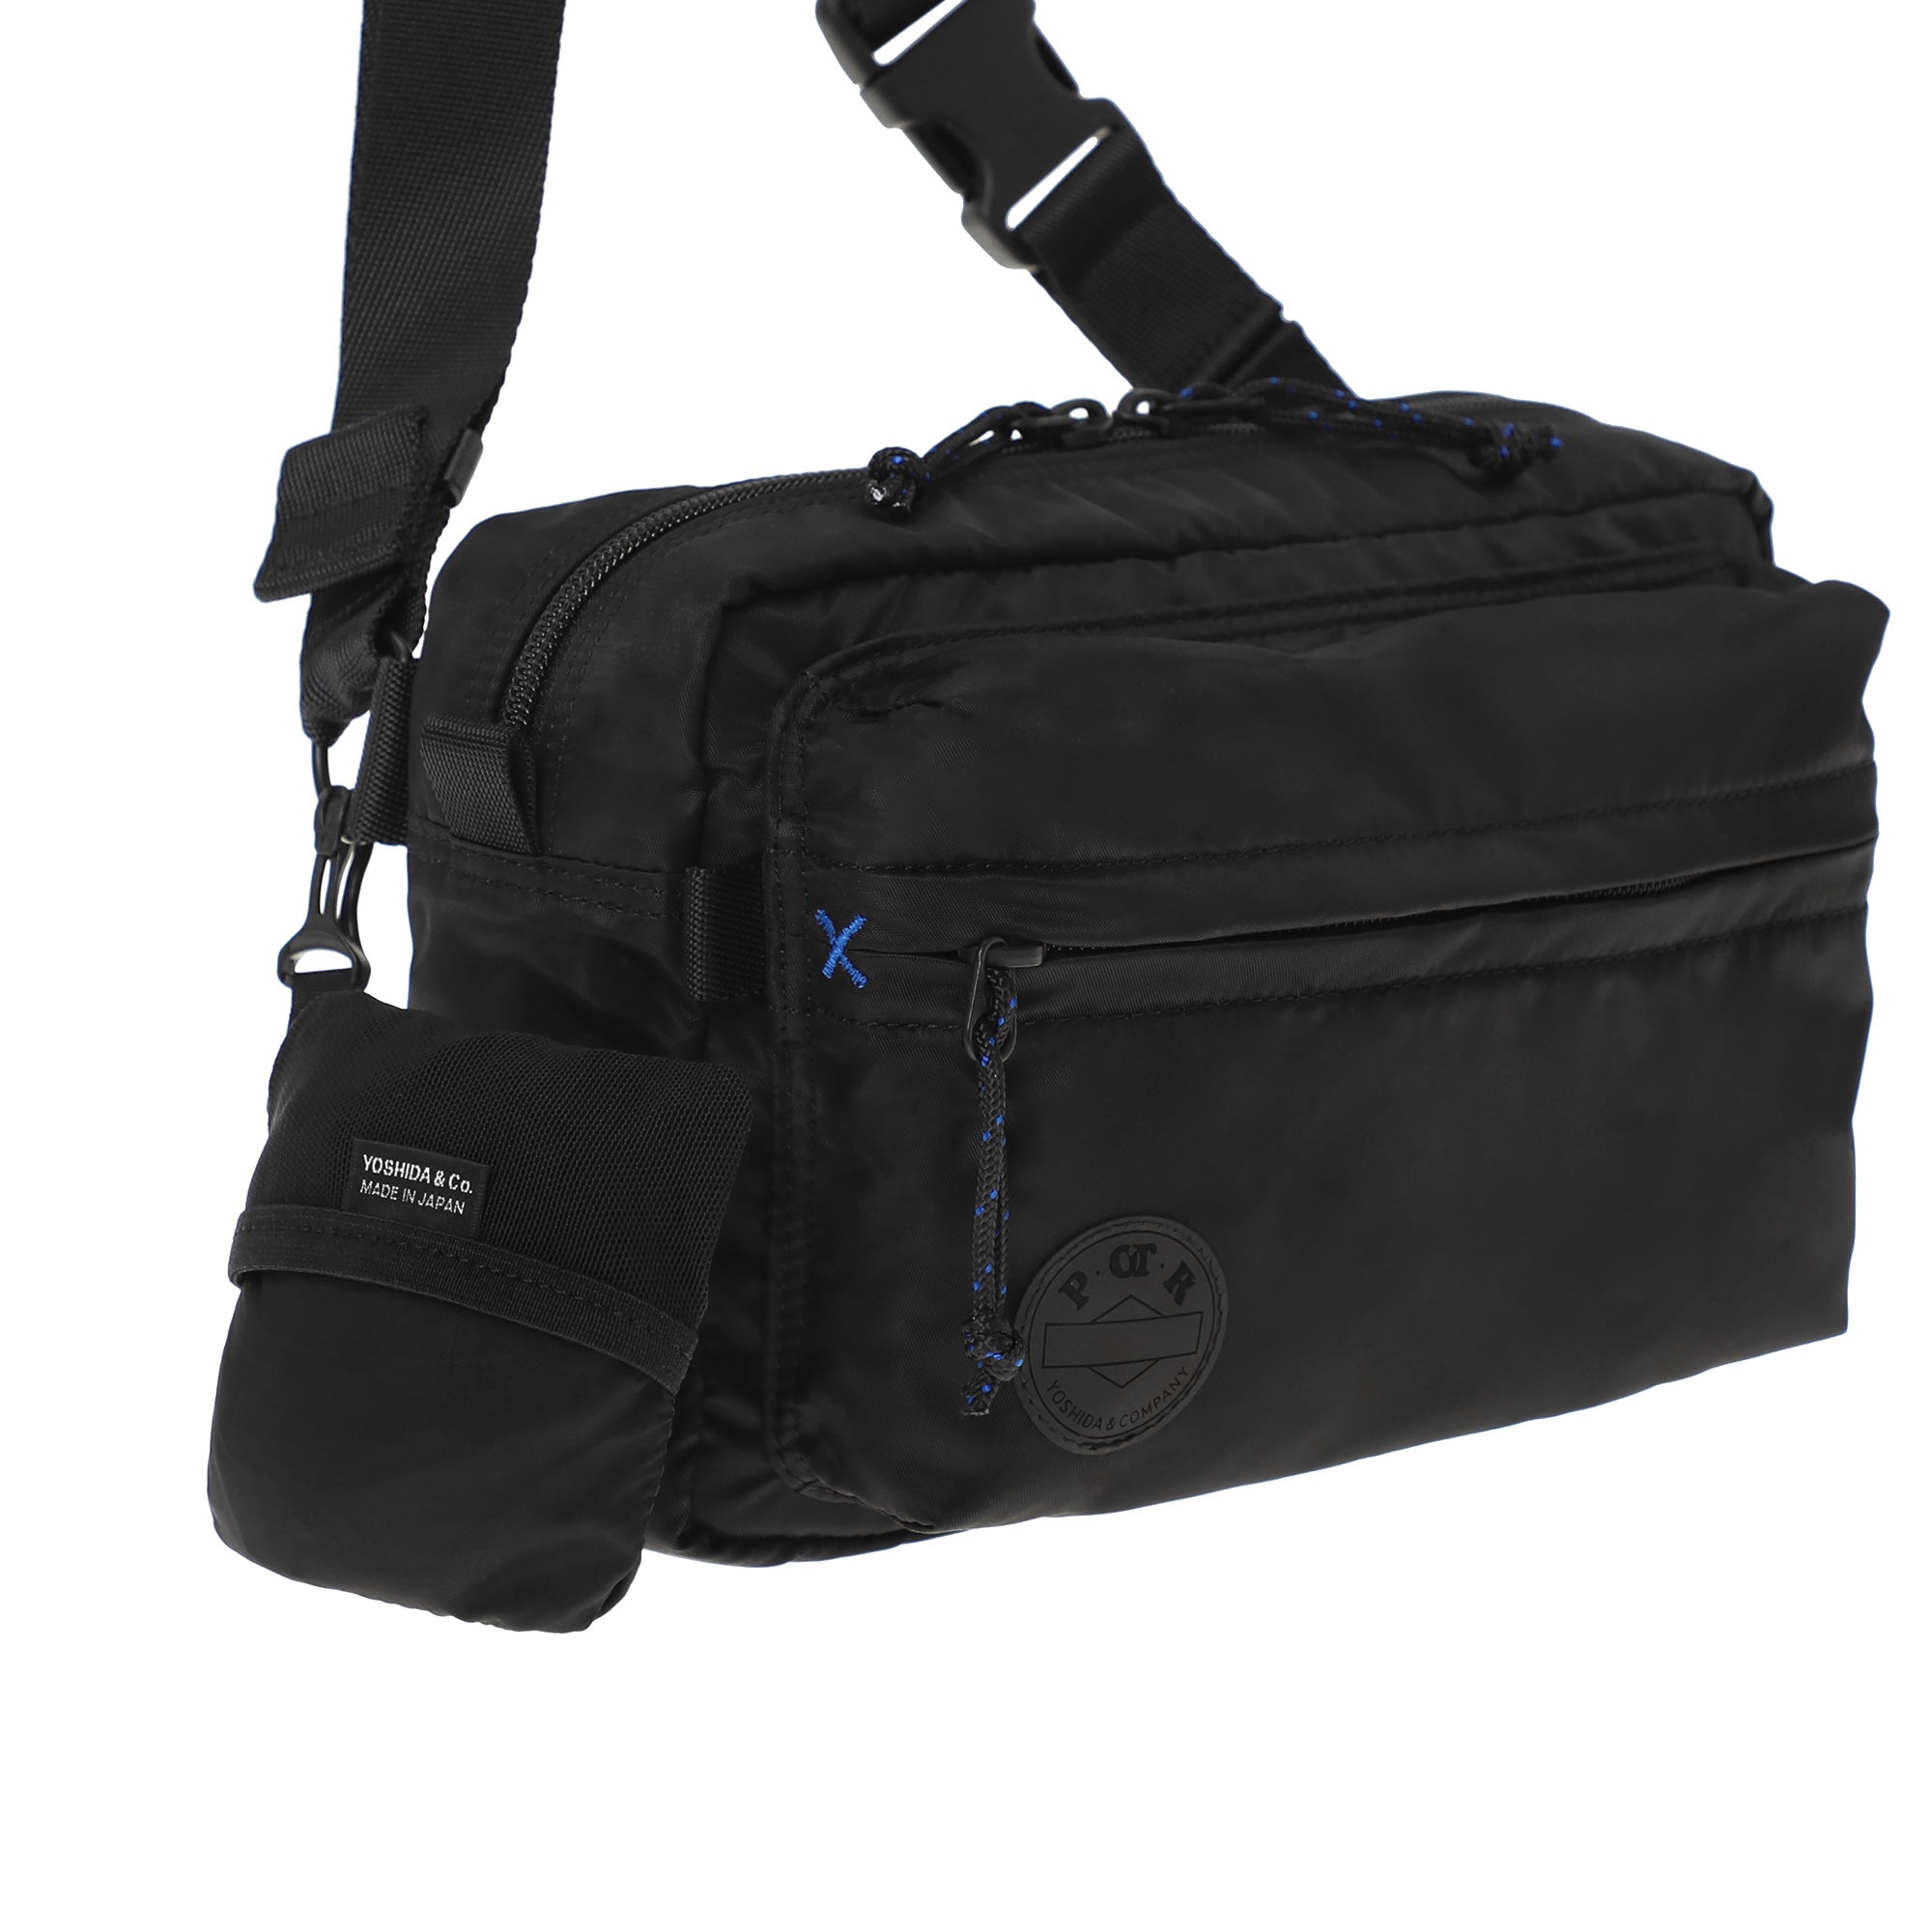 POTR - Packs Shoulder Pack With Souve - (Black) view 6